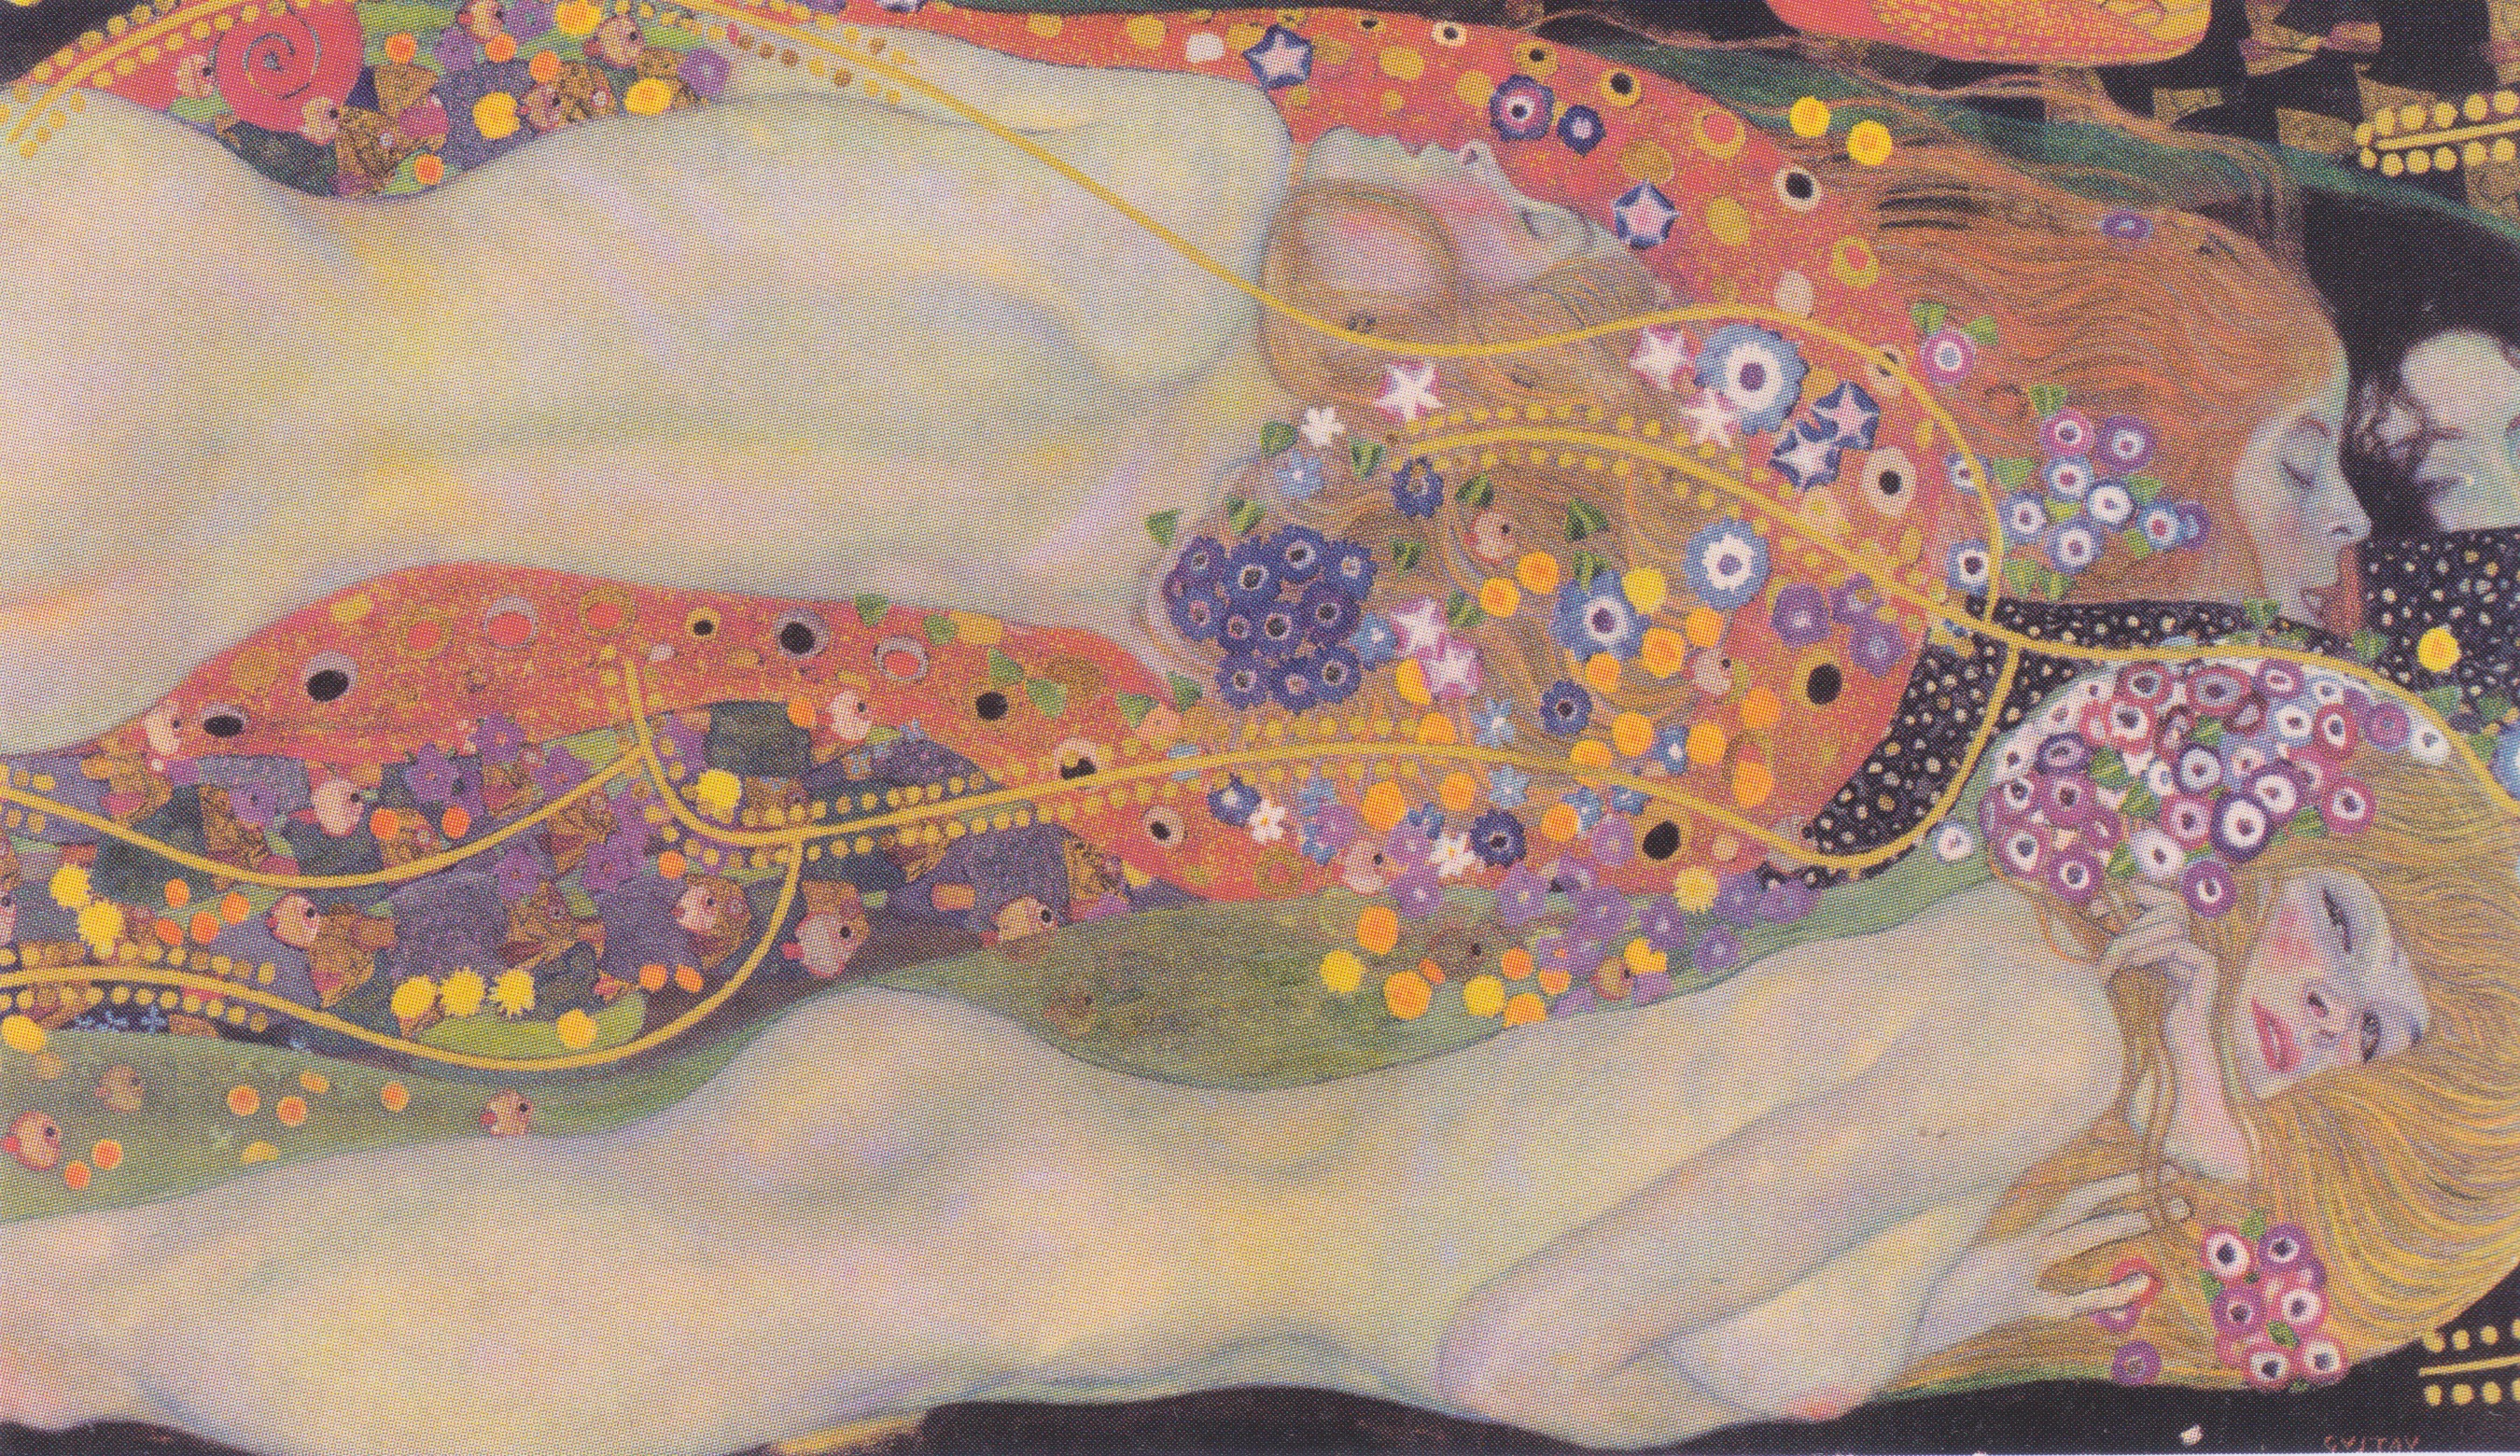 Gustav Klimt - Water Snakes 1907